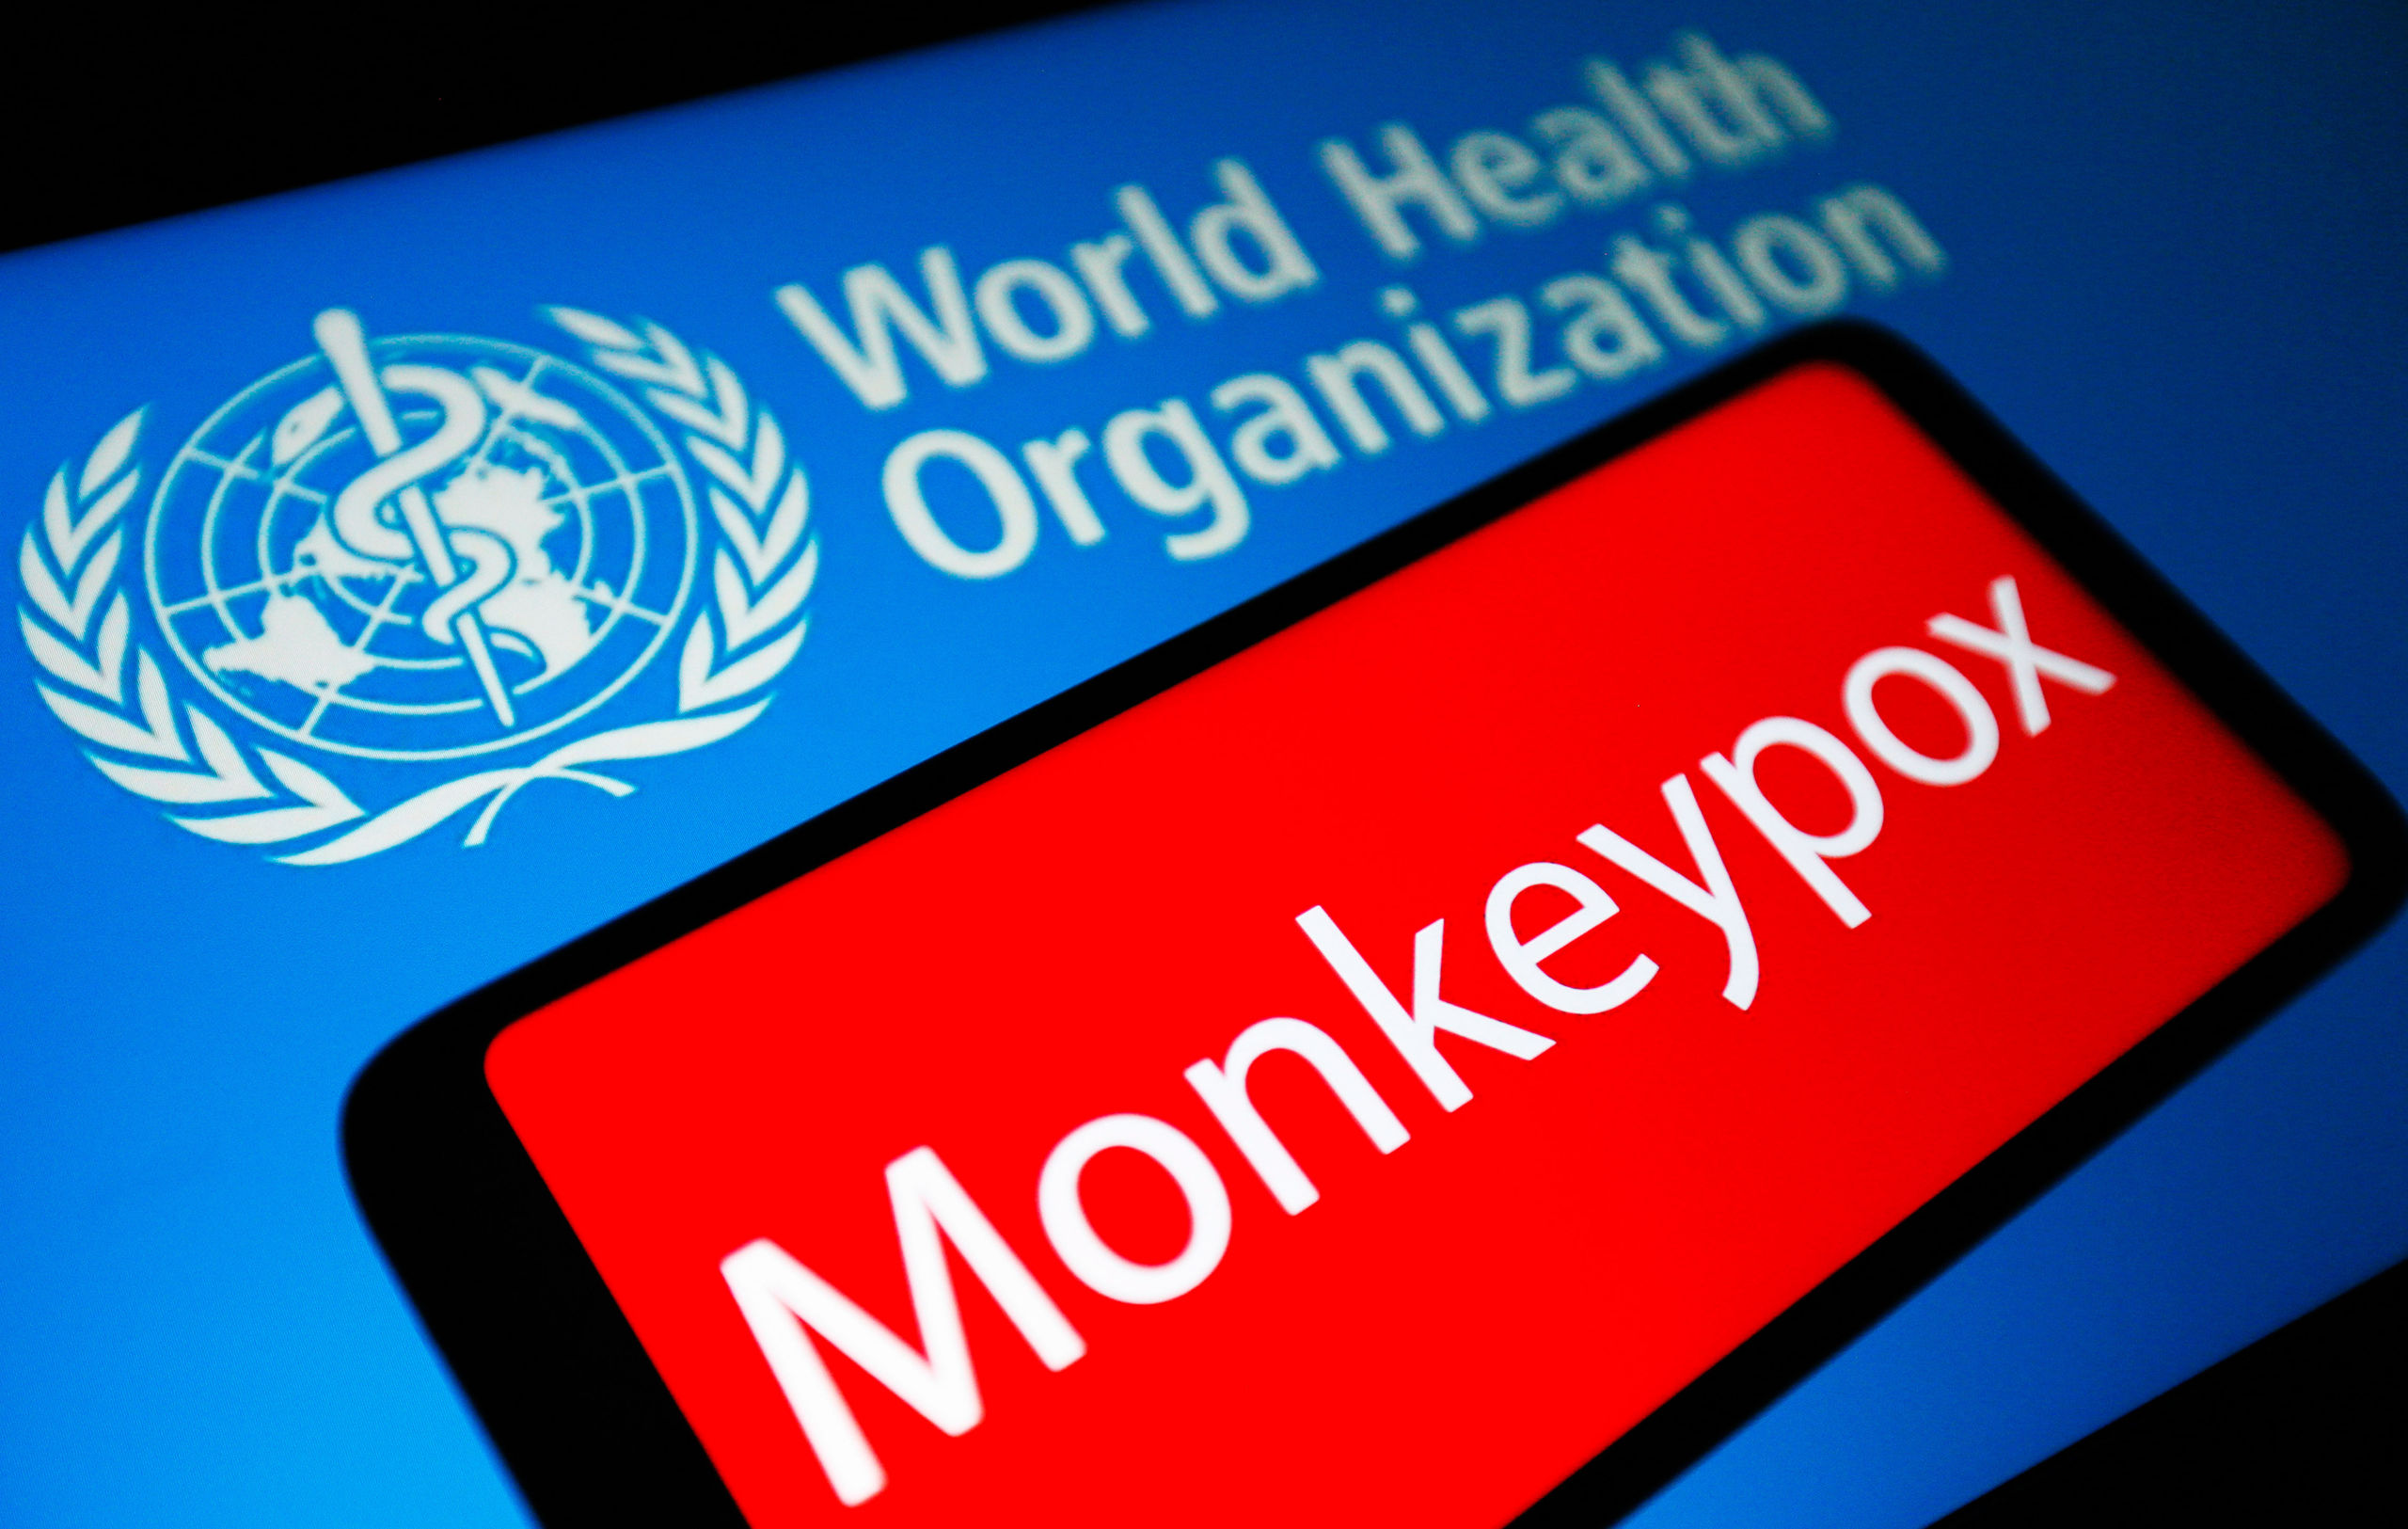 Miedo al virus del mono. ¿Tratamiento inicial? Buena información